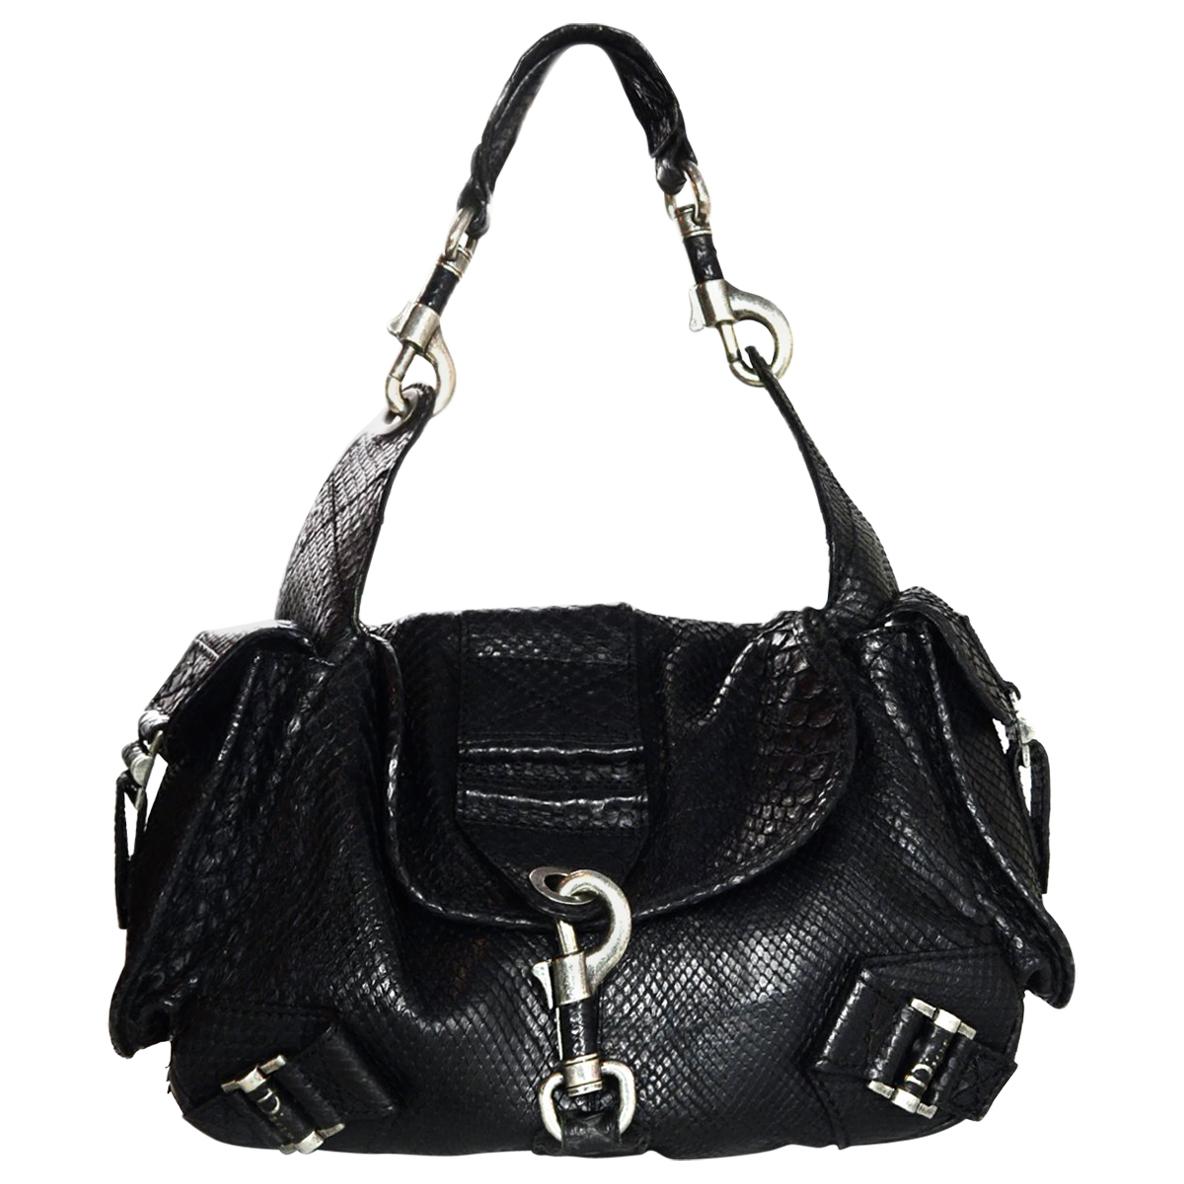 Christian Dior Limited Edition Black Python Shoulder Bag w/ Side Pockets